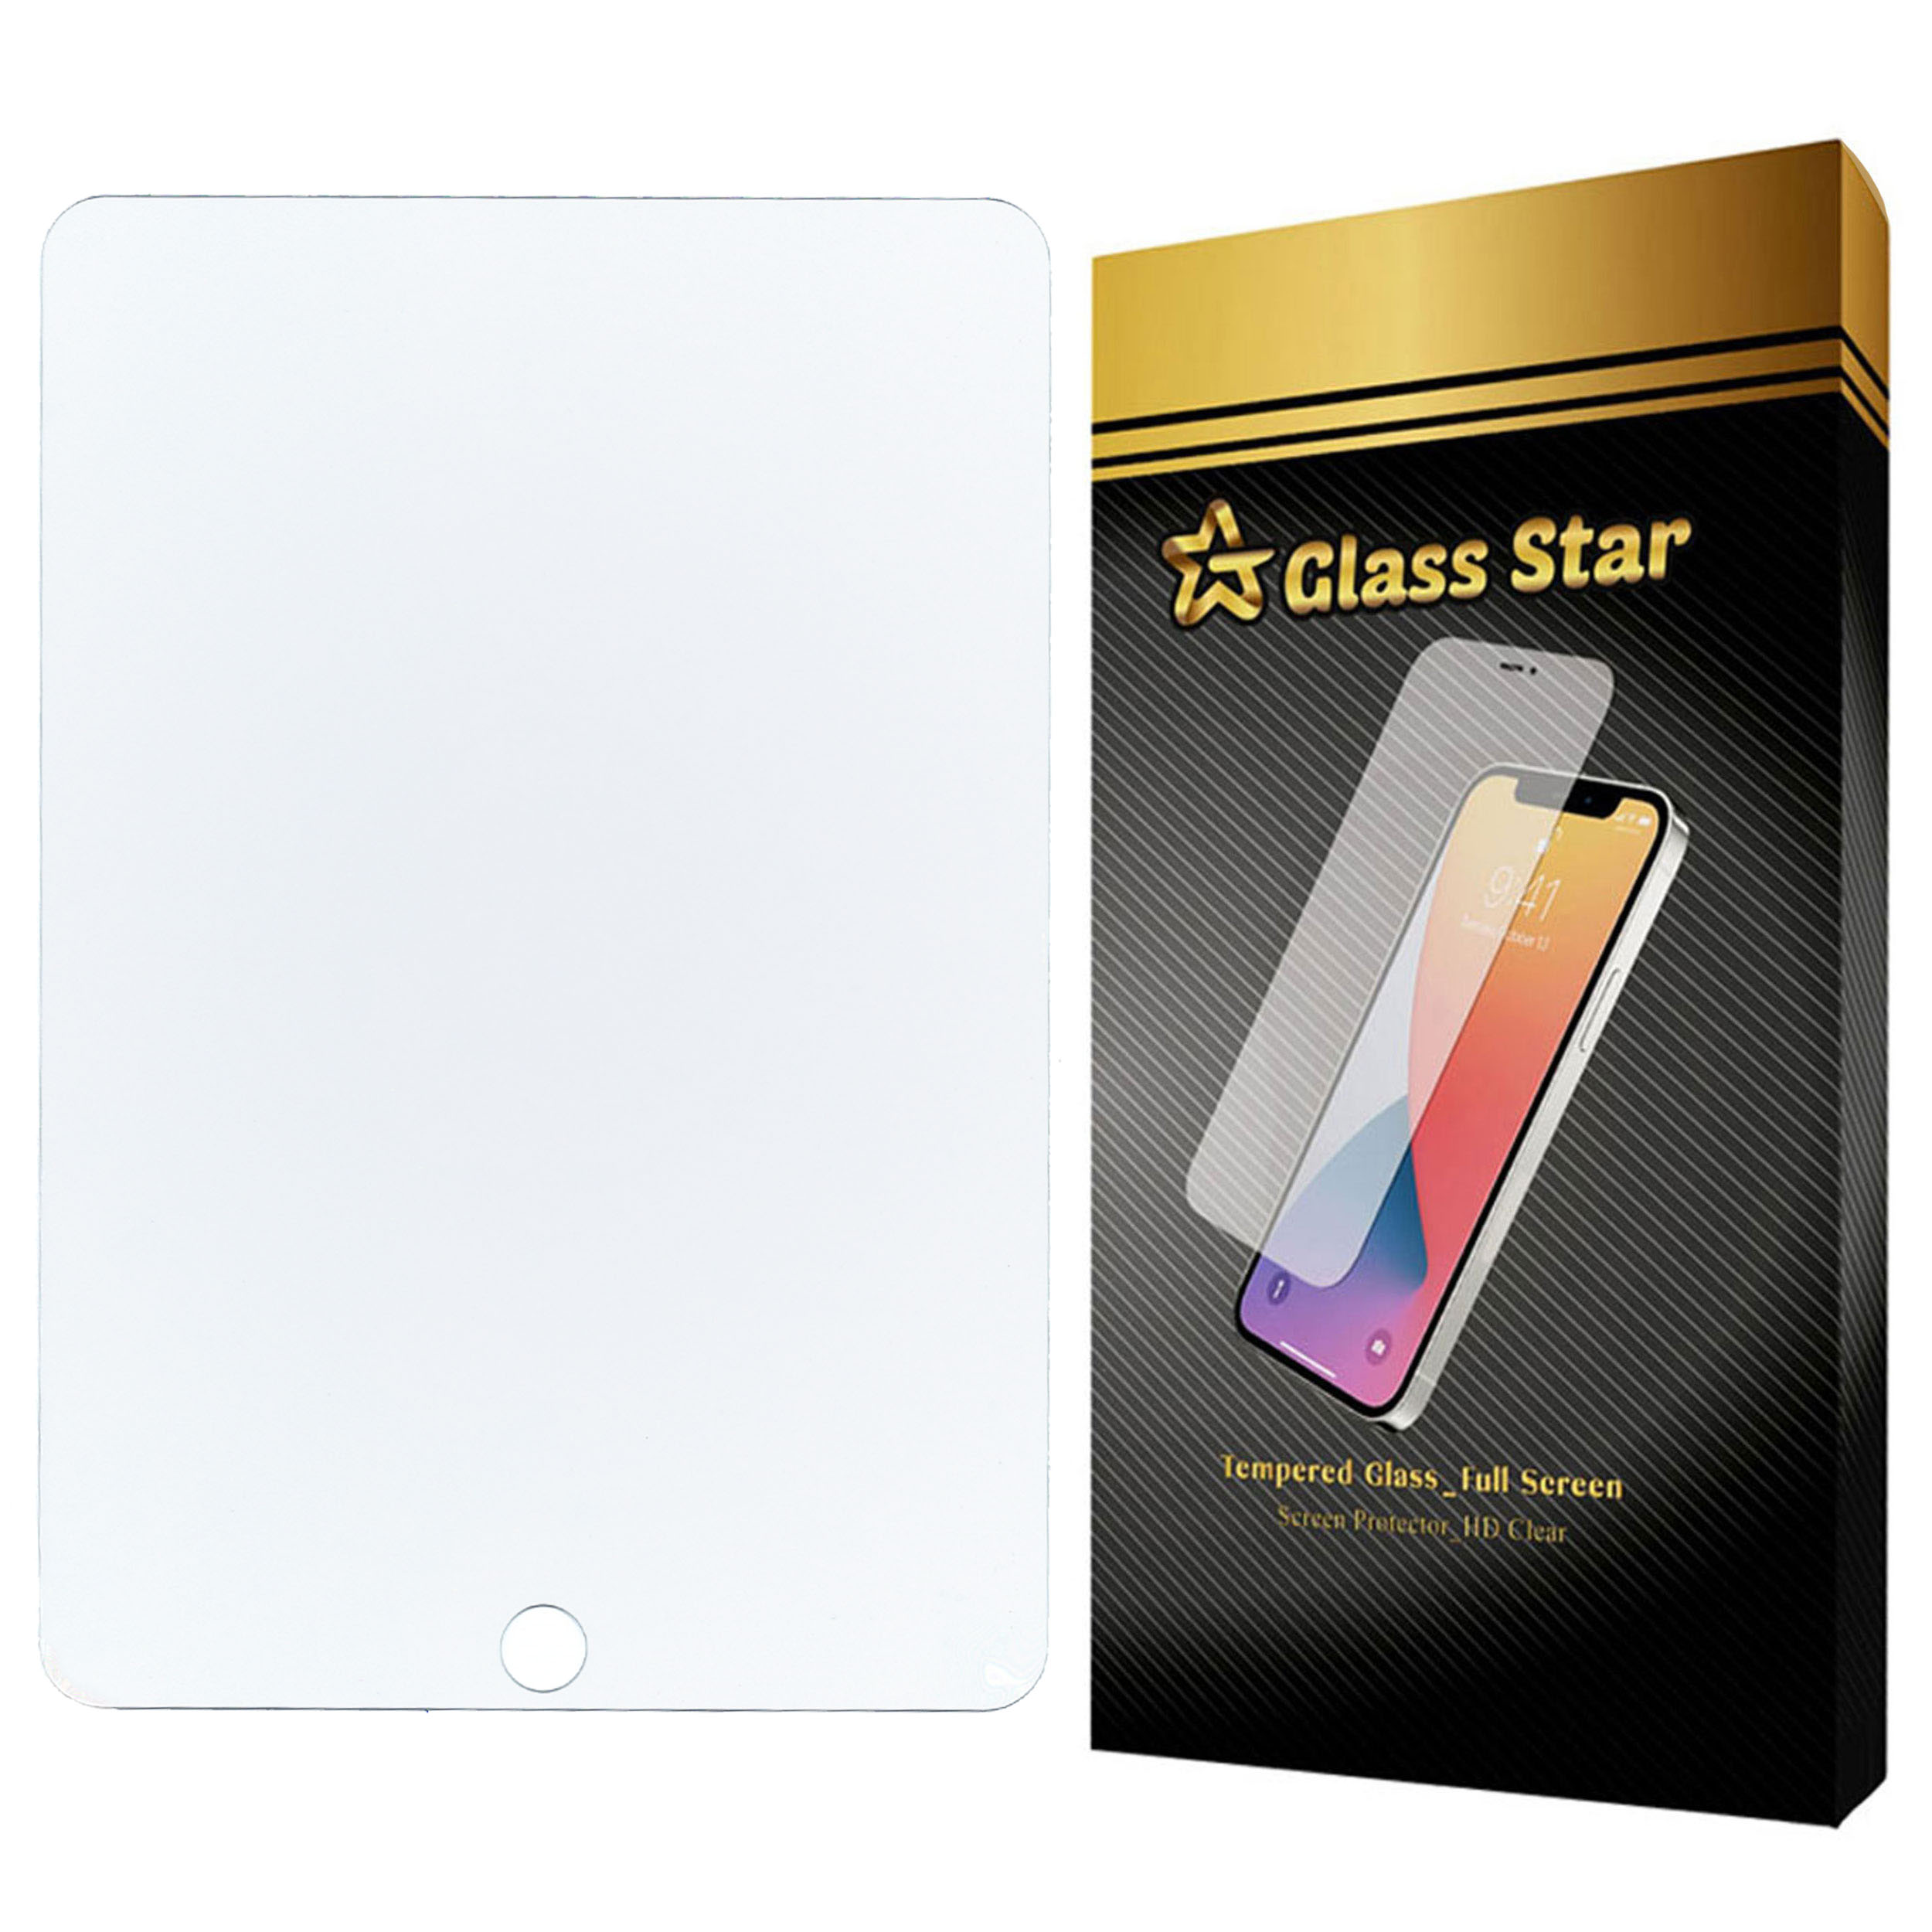 محافظ صفحه نمایش گلس استار مدل TS1GA مناسب برای تبلت اپل iPad mini 4 2015